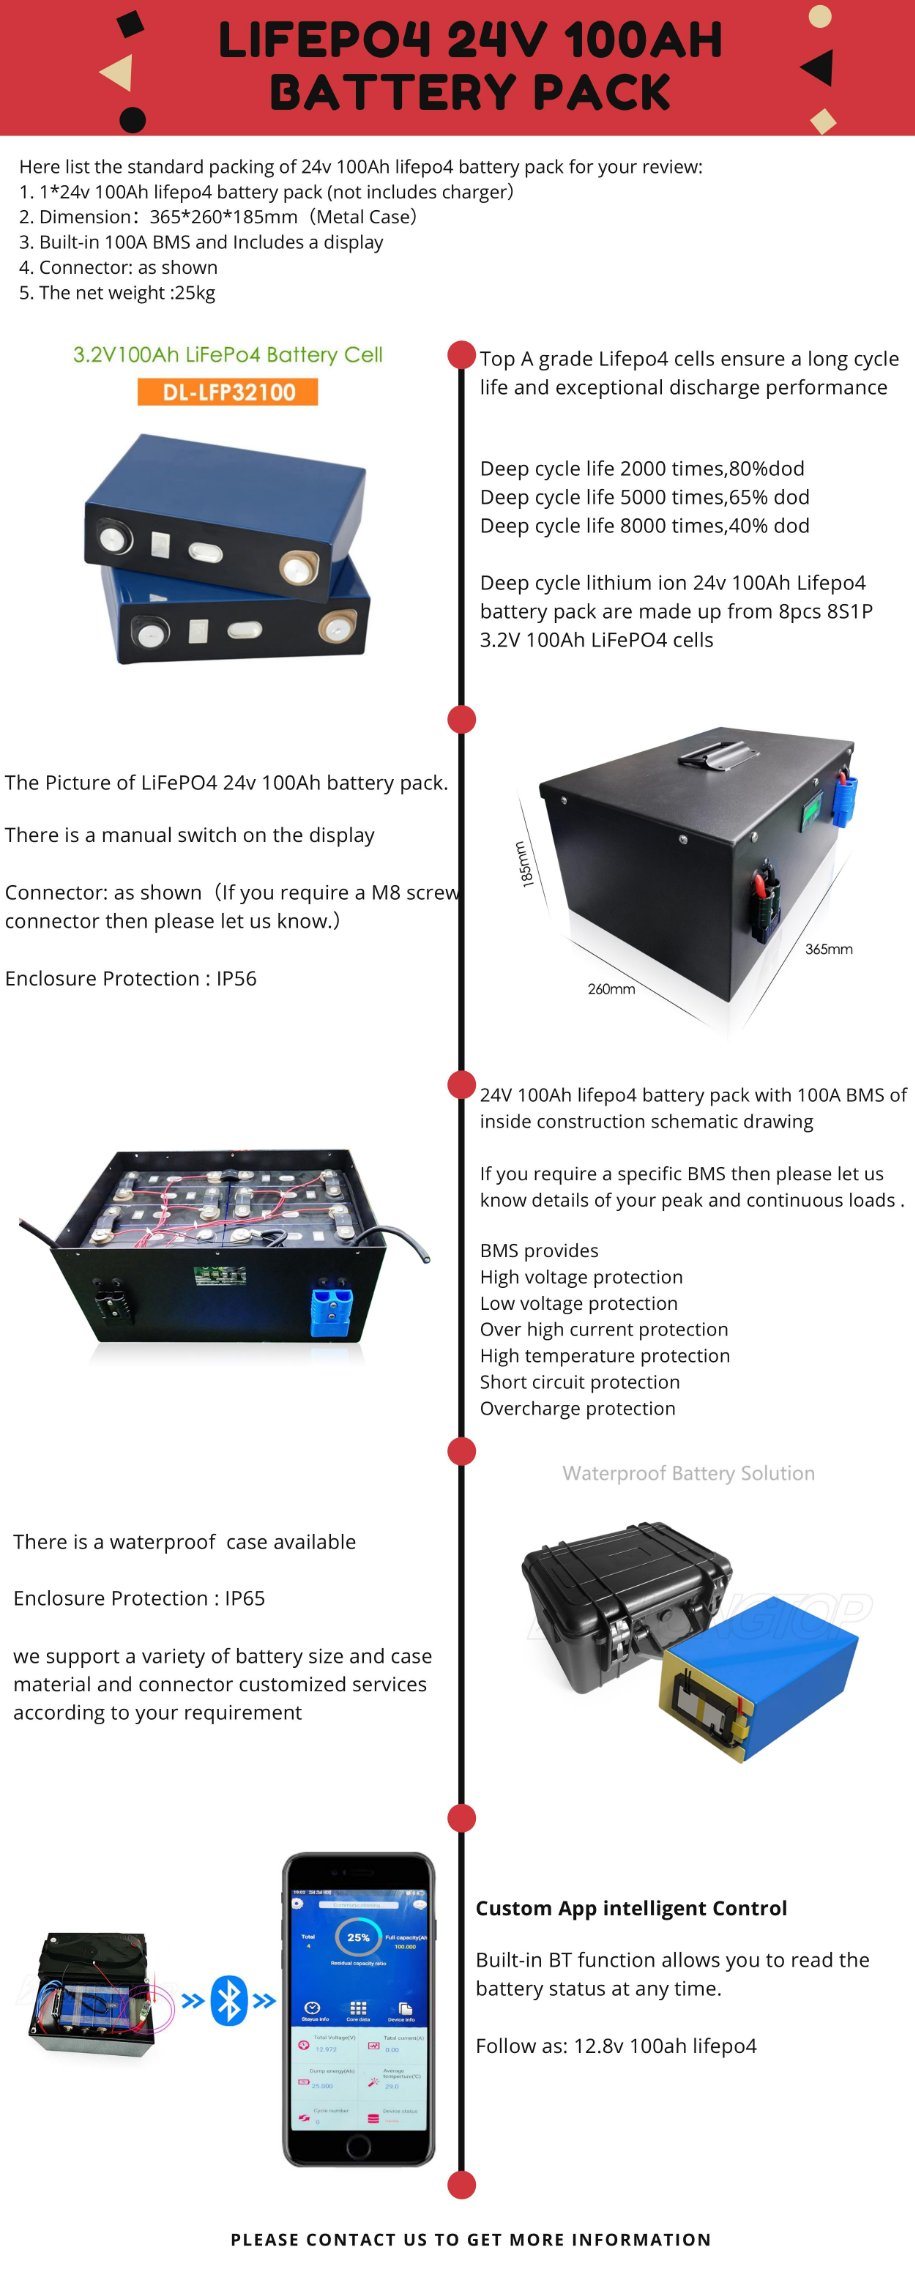 ディープサイクルリチウム太陽電池24V 100Ah LiFePO4バッテリーパック